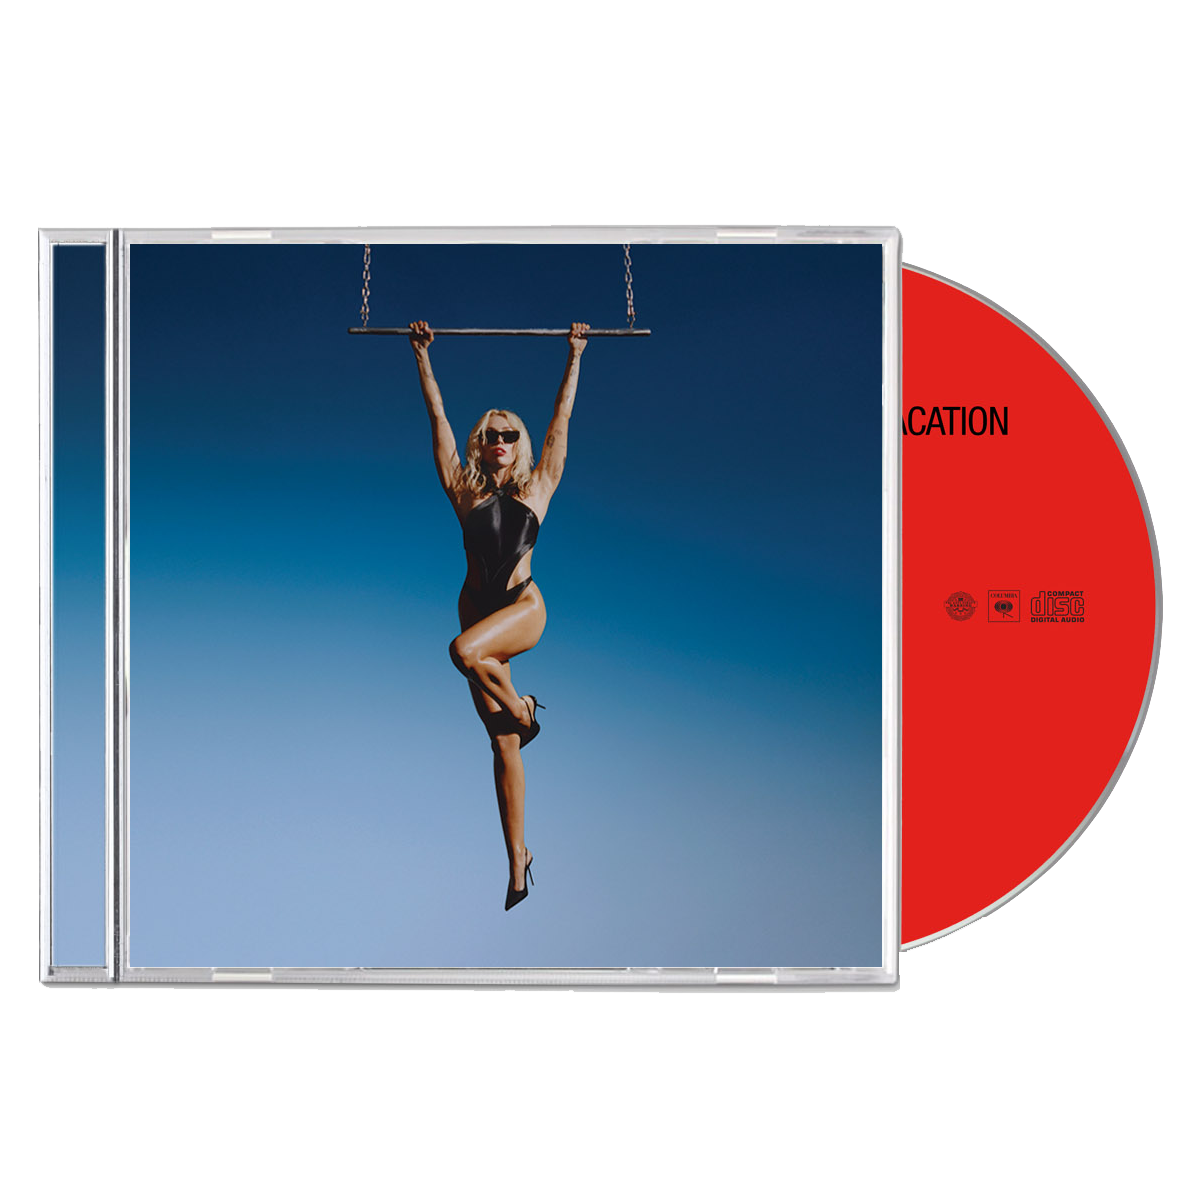 Miley Cyrus - Endless Summer Vacation CD – MILEY CYRUS